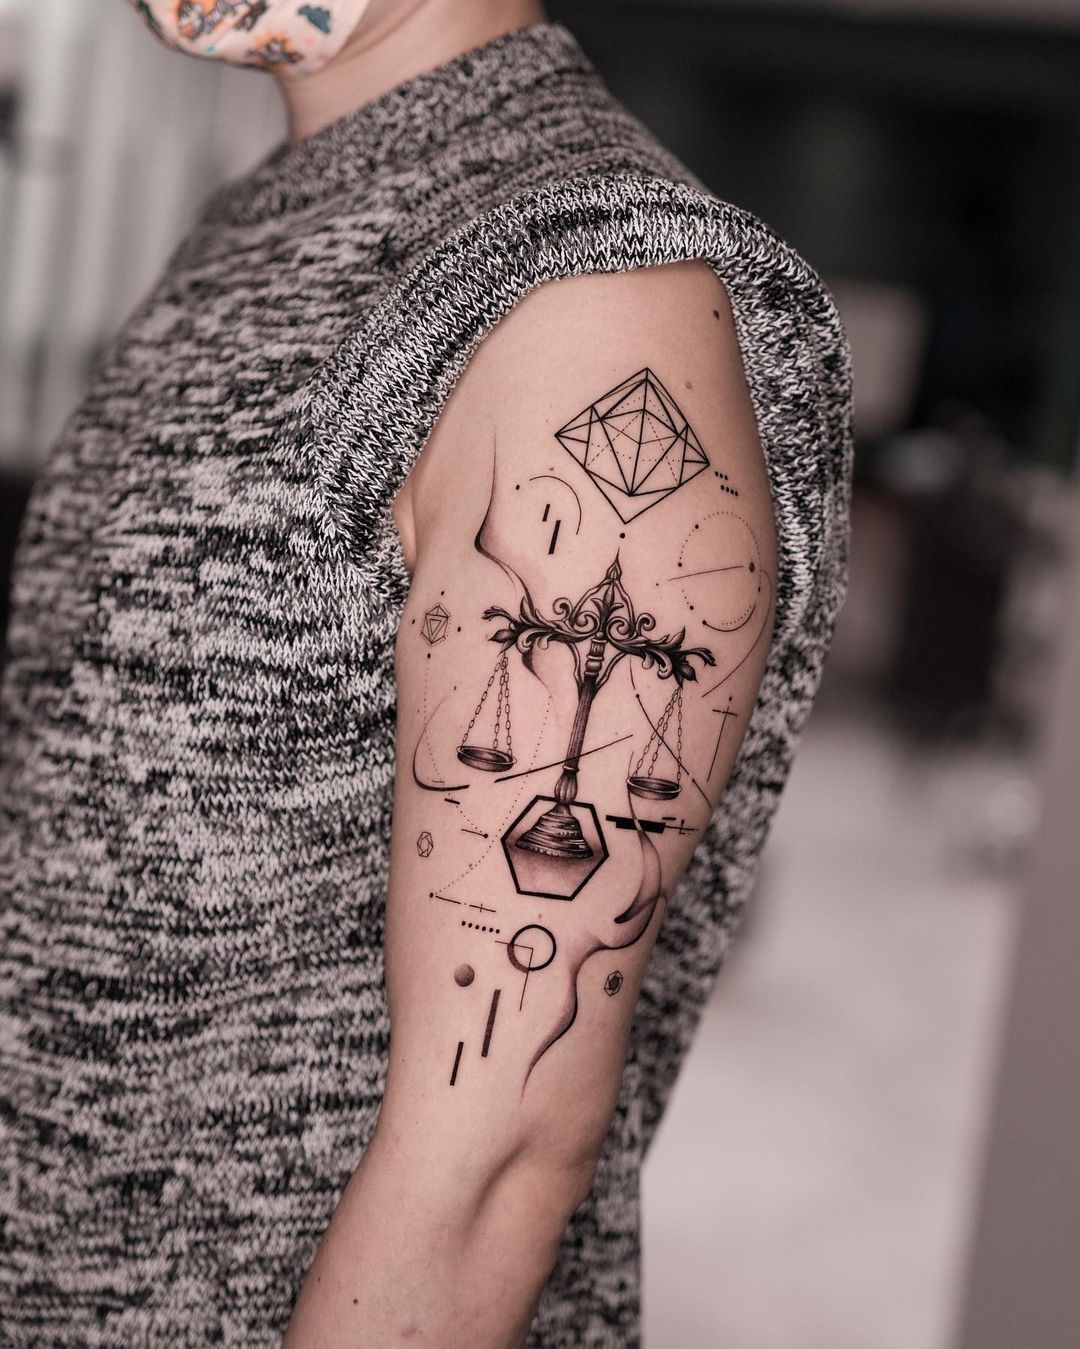 Libra tattoo ideas by deartattoohk